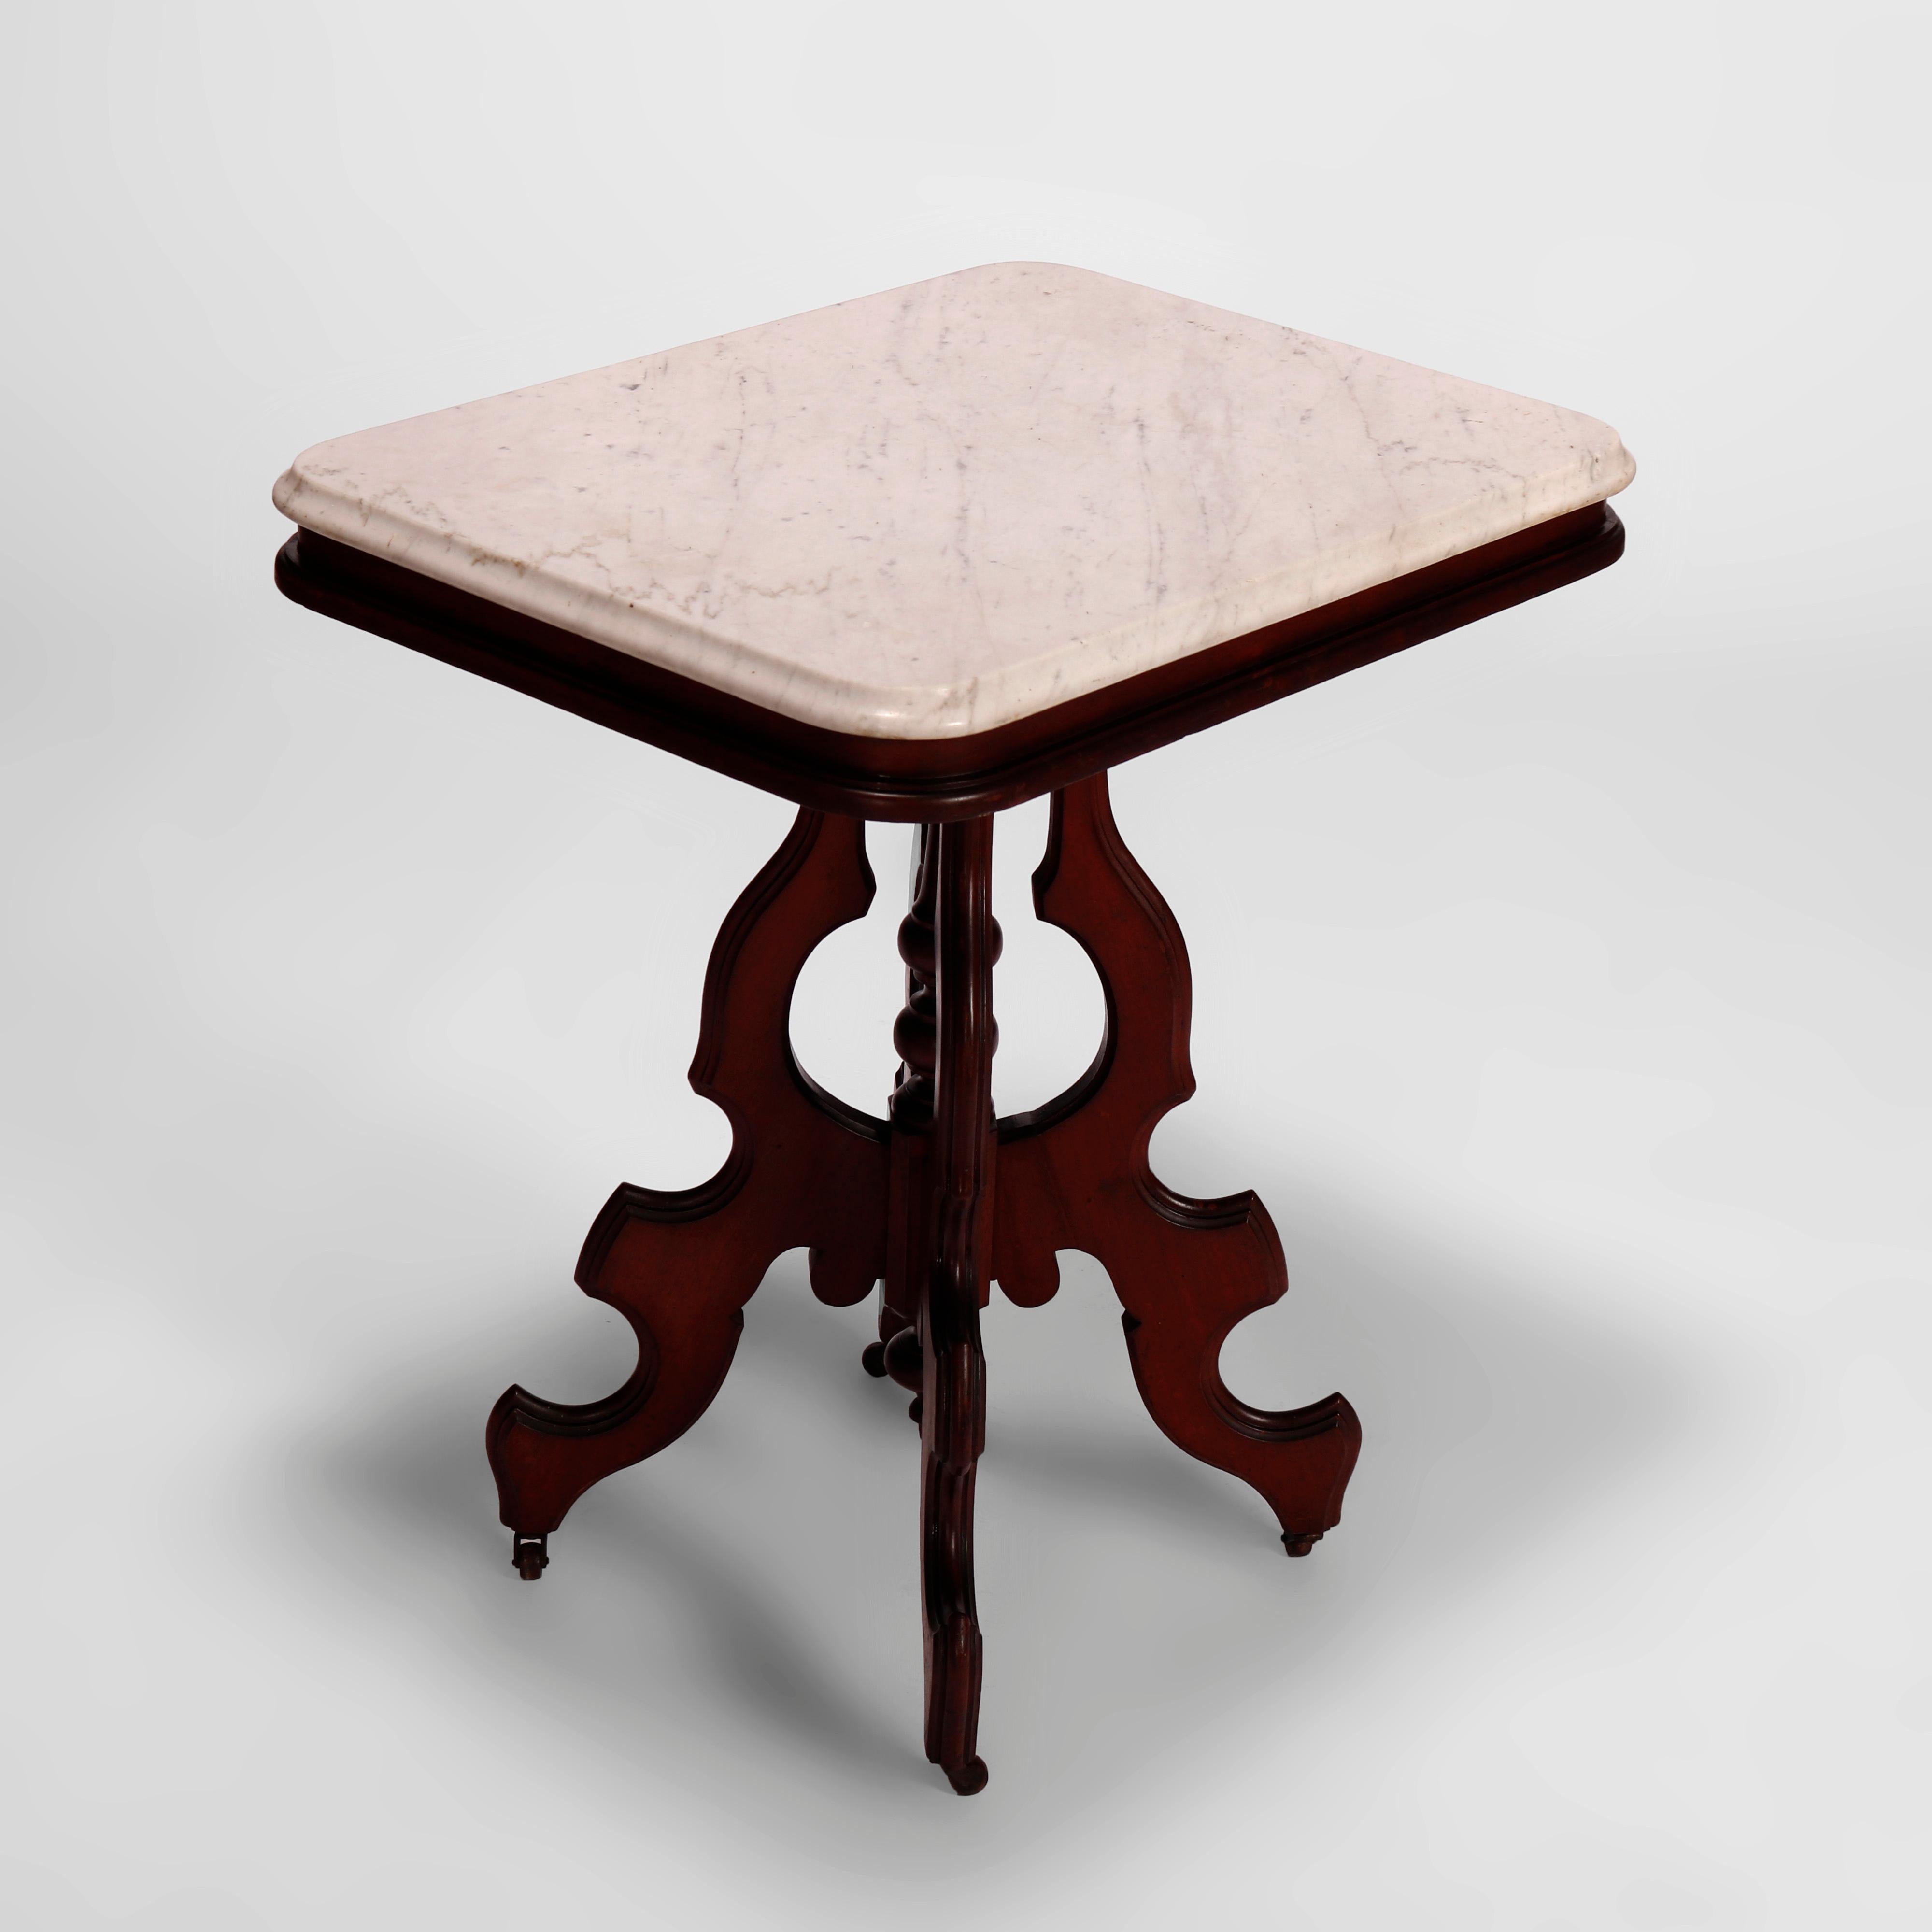 Une table de salon antique Eastlake offre un plateau en marbre biseauté sur une base en noyer avec quatre supports façonnés et une colonne centrale tournée, le tout reposant sur des pieds cabriole stylisés, vers 1890

Mesures- 29''H x 26.25''W x